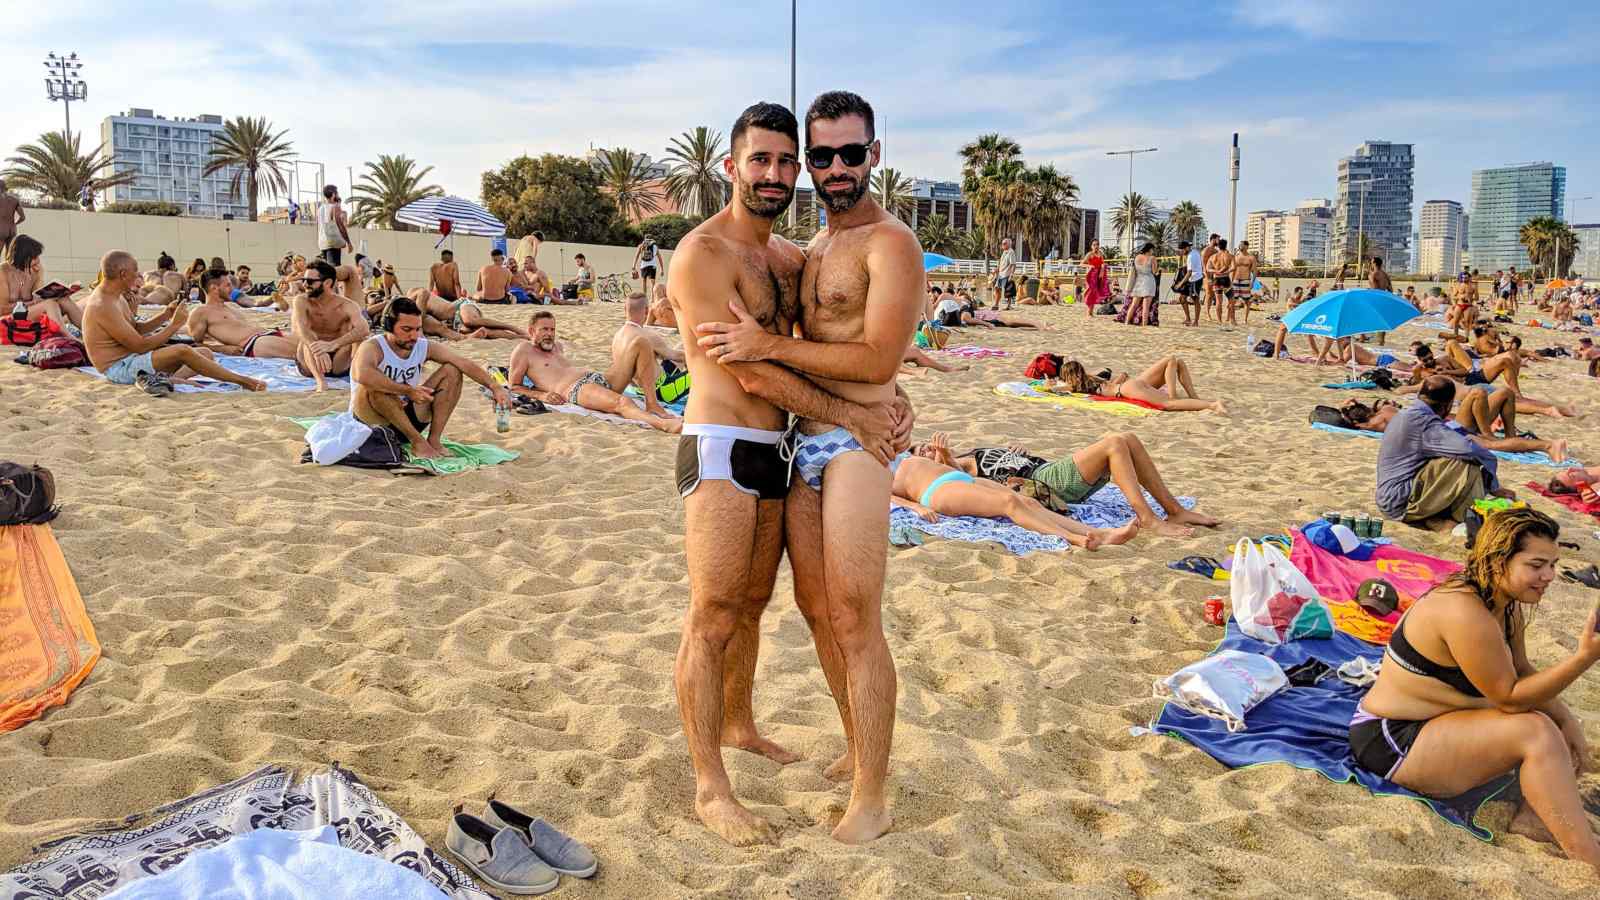 Chiringuito BeGay gay beach bar at Mar Bella